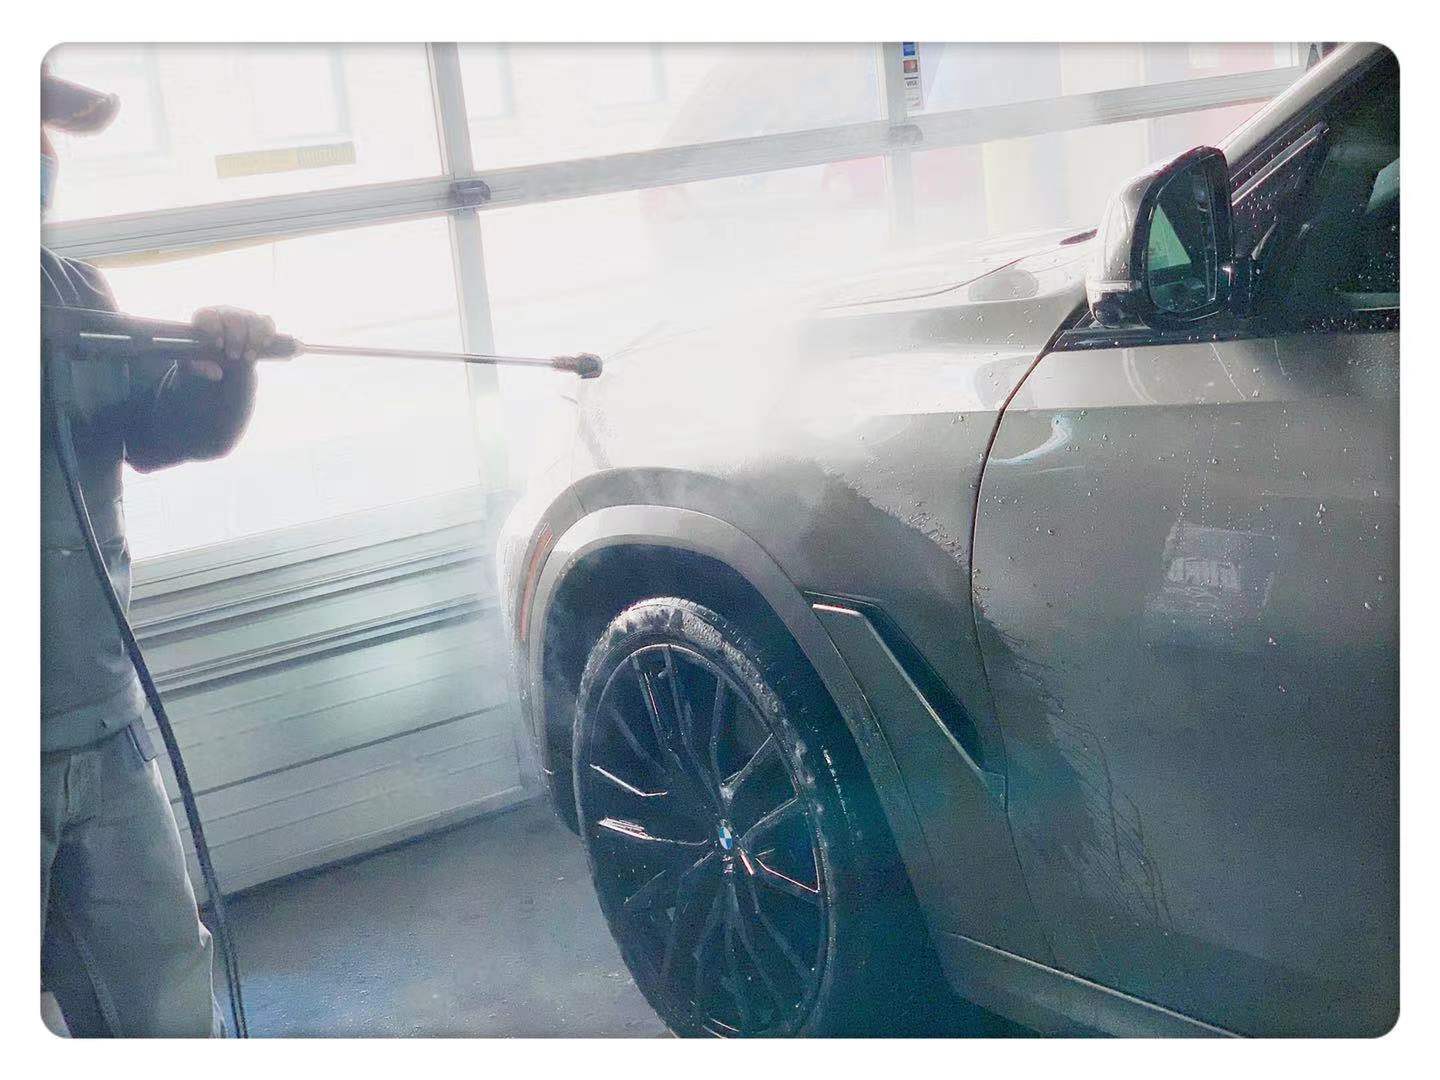 汽车喷漆 温控喷漆 快速优质服务-时代车行 Full-Service Auto Body Repairs